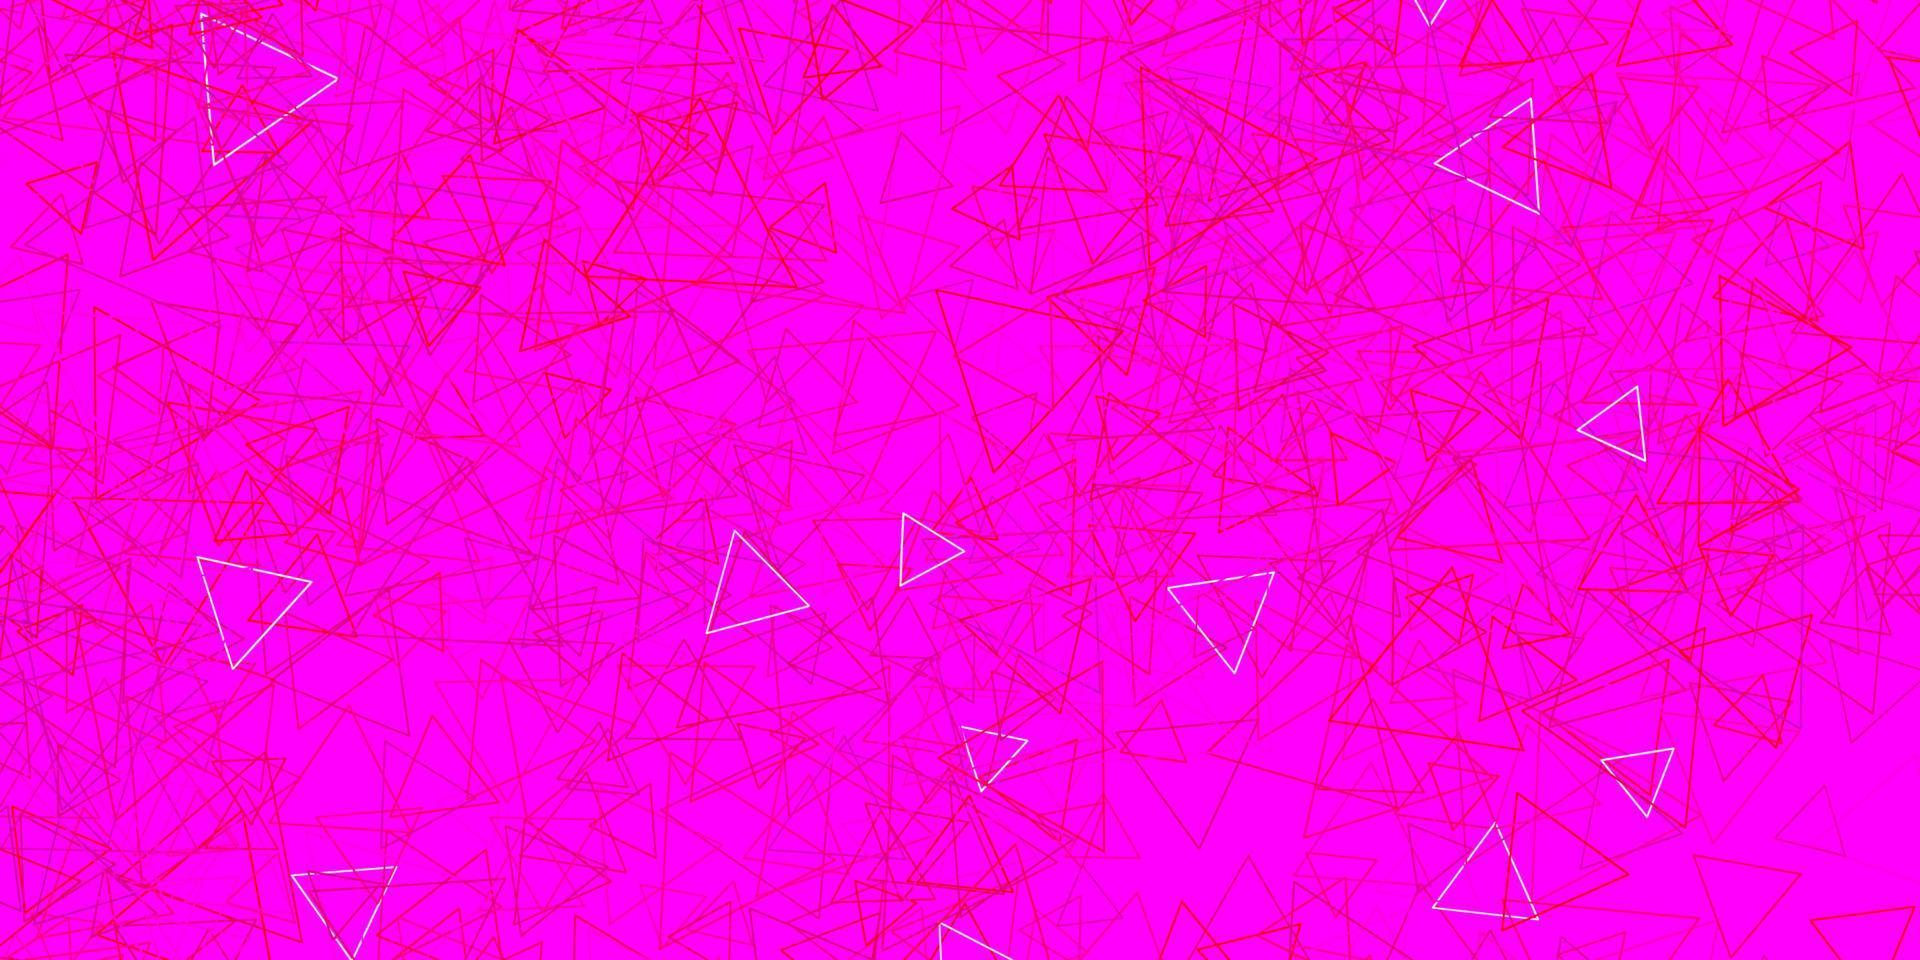 sfondo vettoriale rosa scuro con triangoli.